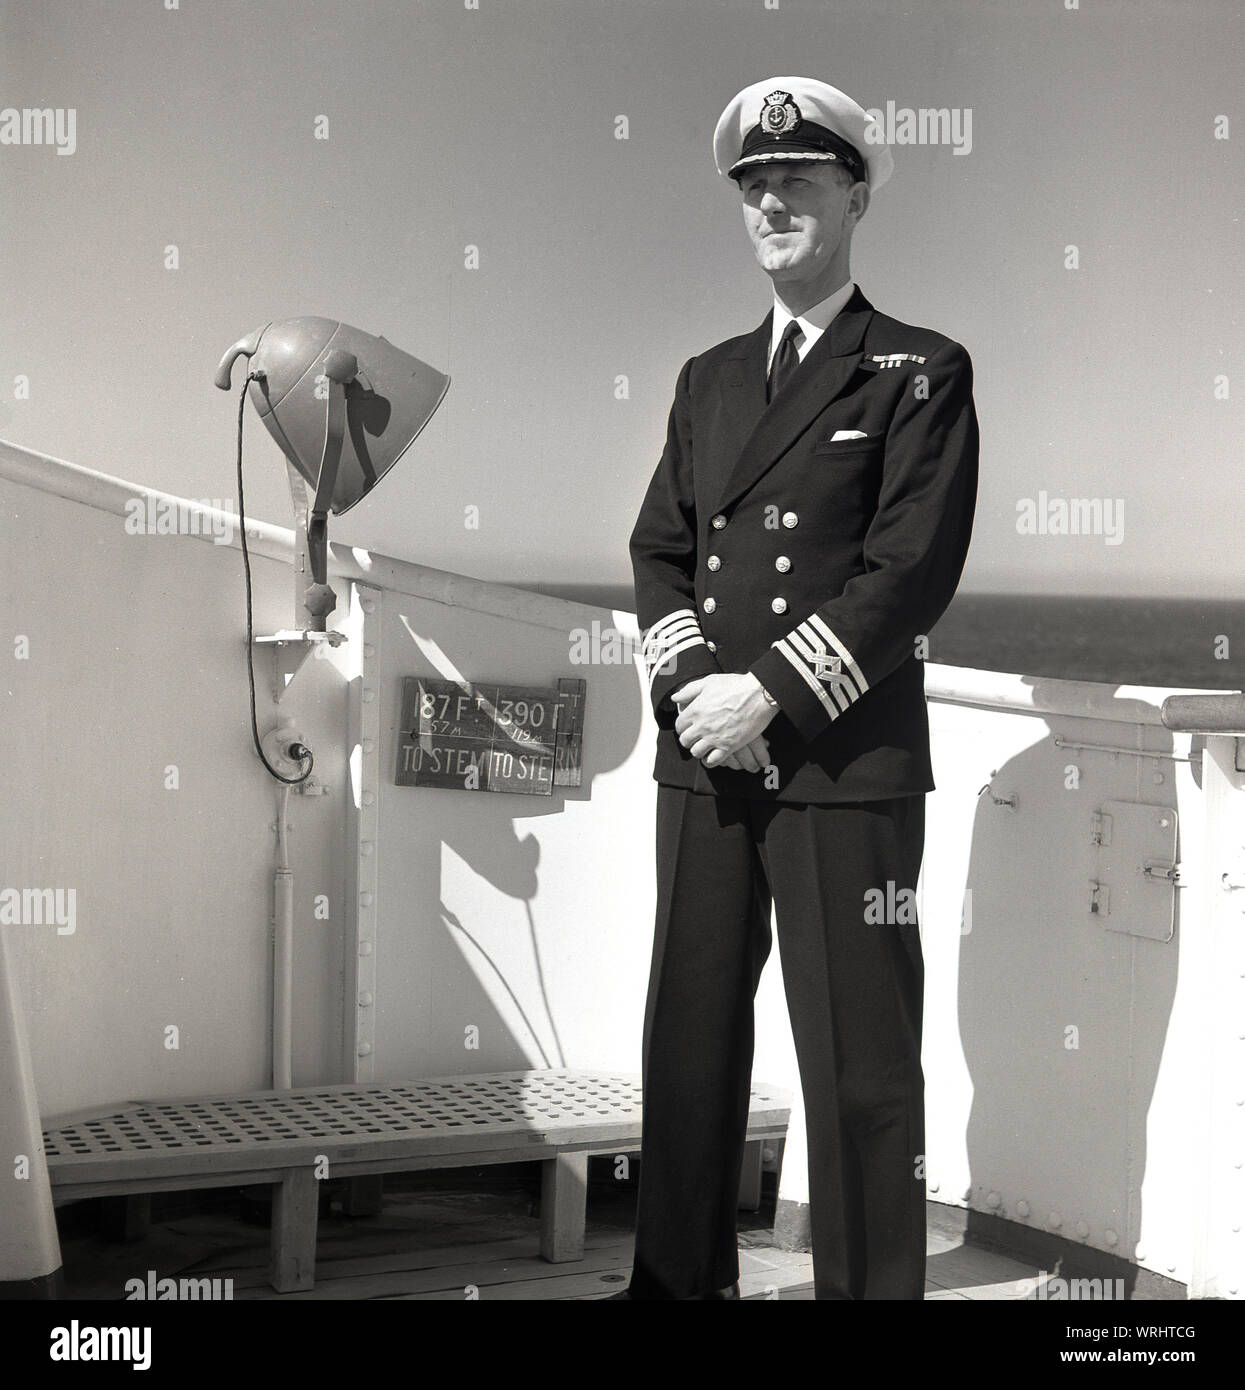 1950, historische, uniformierten Kapitän eines Union-Castle steamship stehend auf dem Deck seines Schiffes. Als Kapitän des Schiffes, die er in der Liner ist. Stockfoto